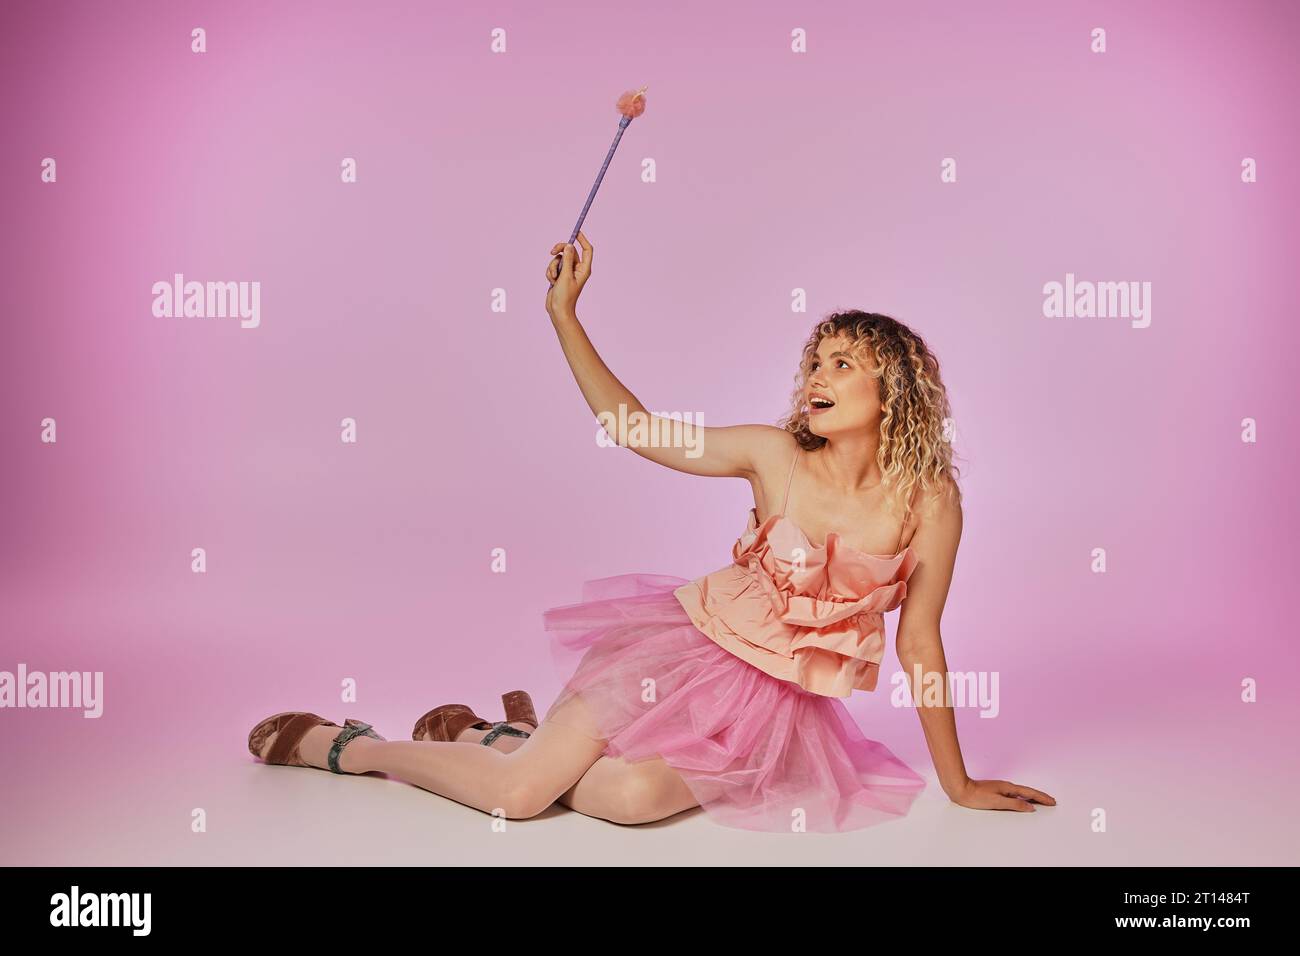 blonde joyeuse avec les cheveux bouclés posant sur fond rose en costume de fée de dent avec baguette magique Banque D'Images